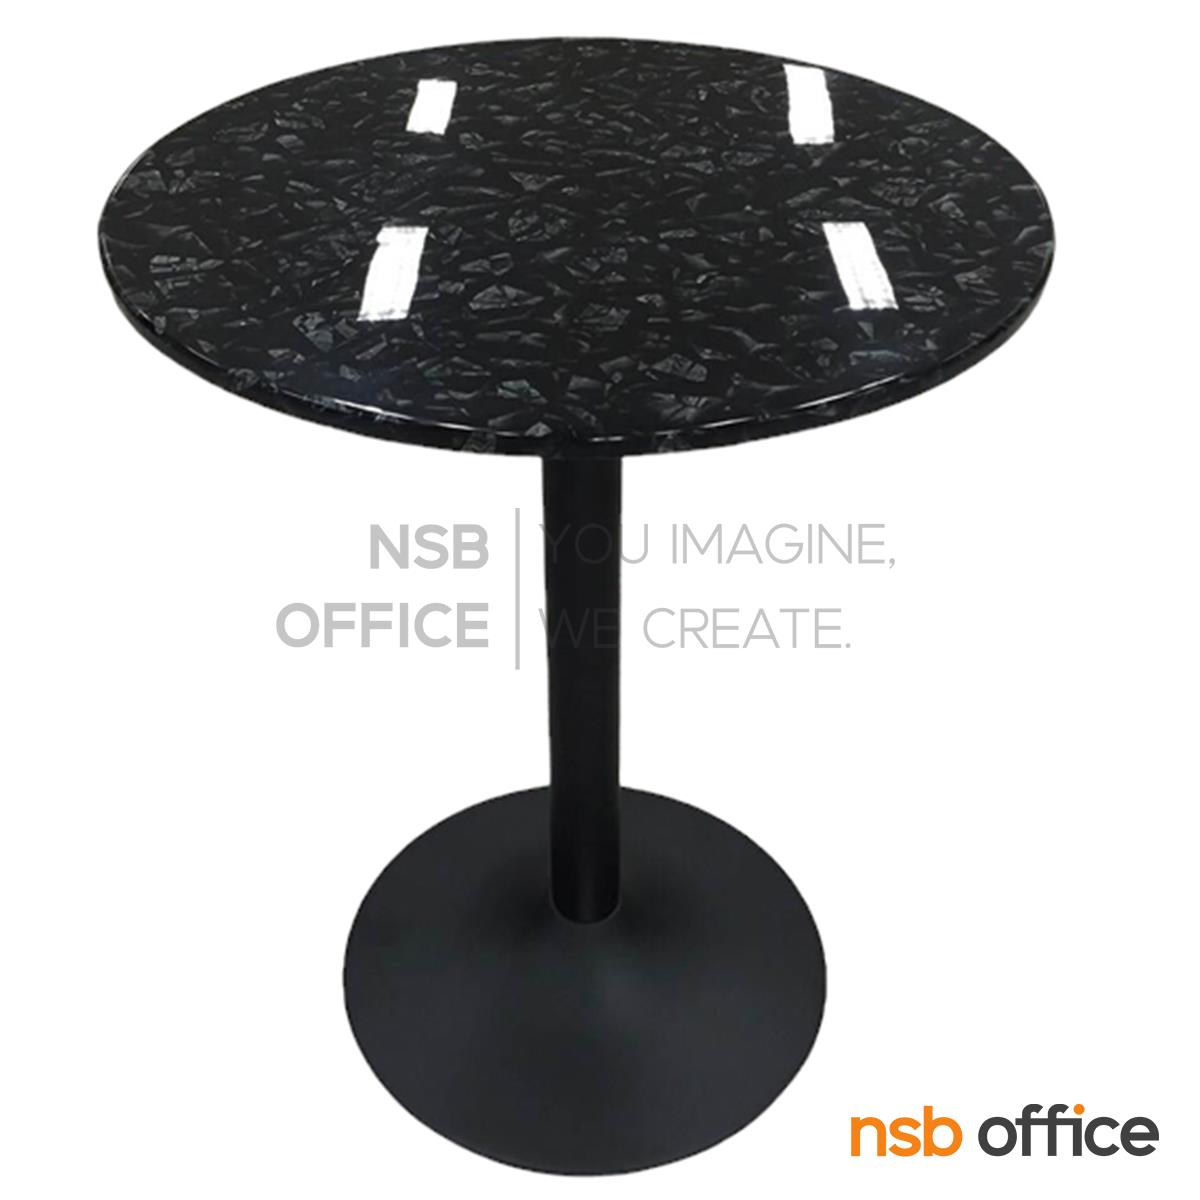 โต๊ะหน้าหินอ่อน รุ่น Brando (แบนโด้) ขนาด 60Di cm.  โครงเหล็กเคลือบสีดำ